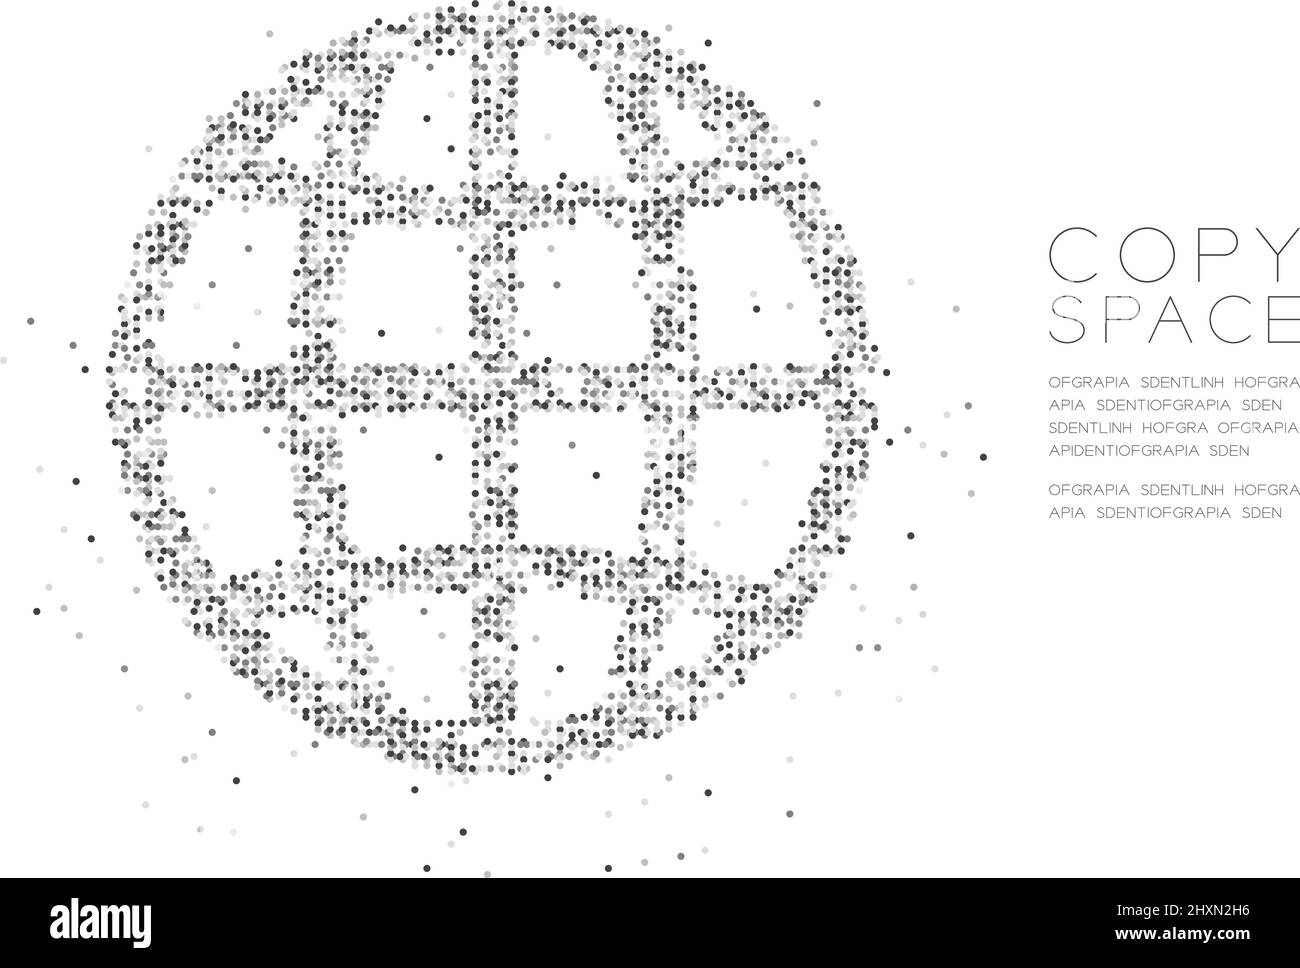 Abstrakt Geometrischer Kreis Punkt Molekül Partikel Netzwerk Icon Form, VR Technologie Internet Konzept Design schwarz Farbe Illustration isoliert auf weiß b Stock Vektor